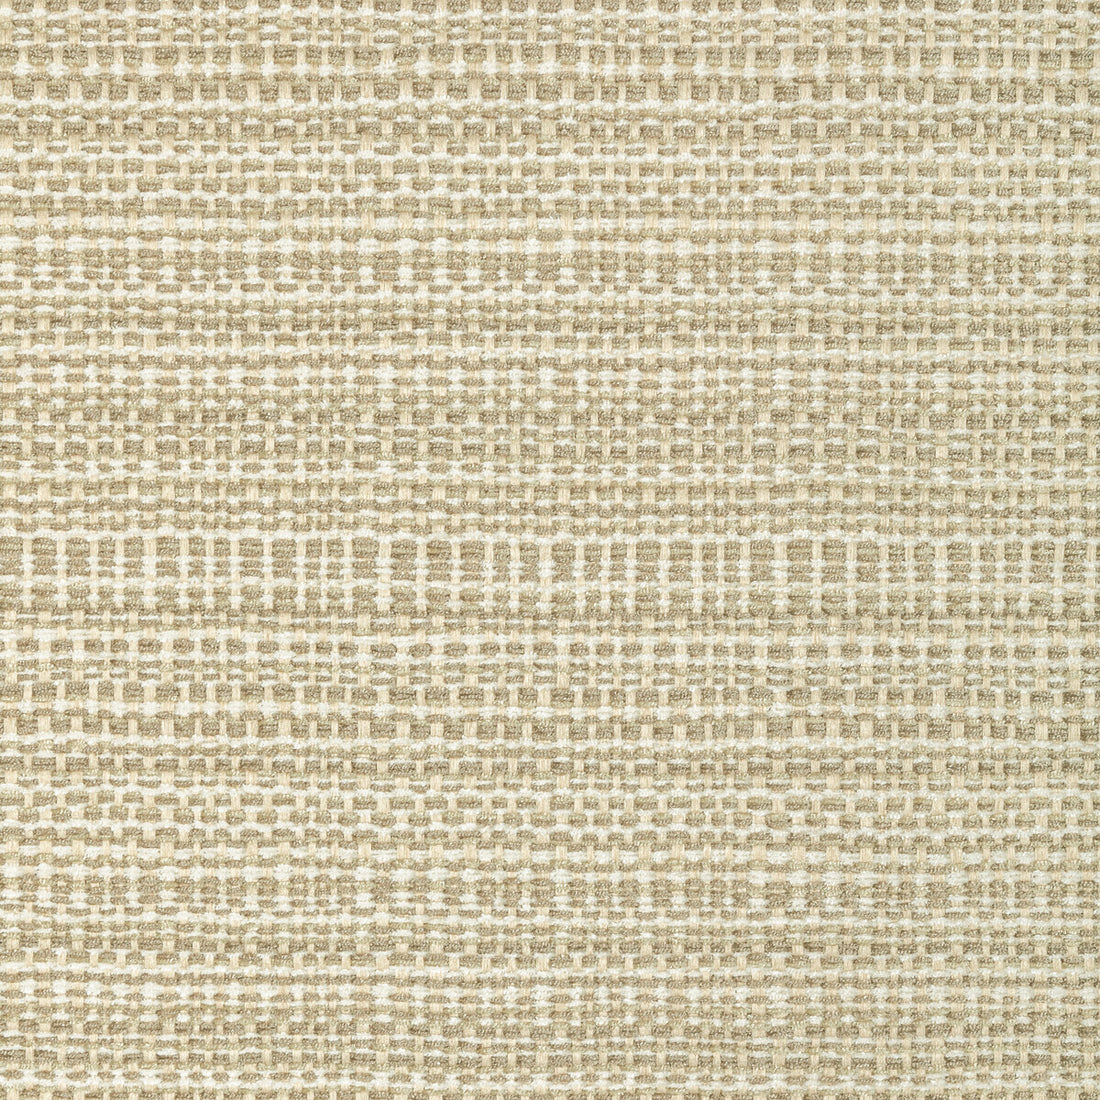 Kravet Basics fabric in 35993-16 color - pattern 35993.16.0 - by Kravet Basics